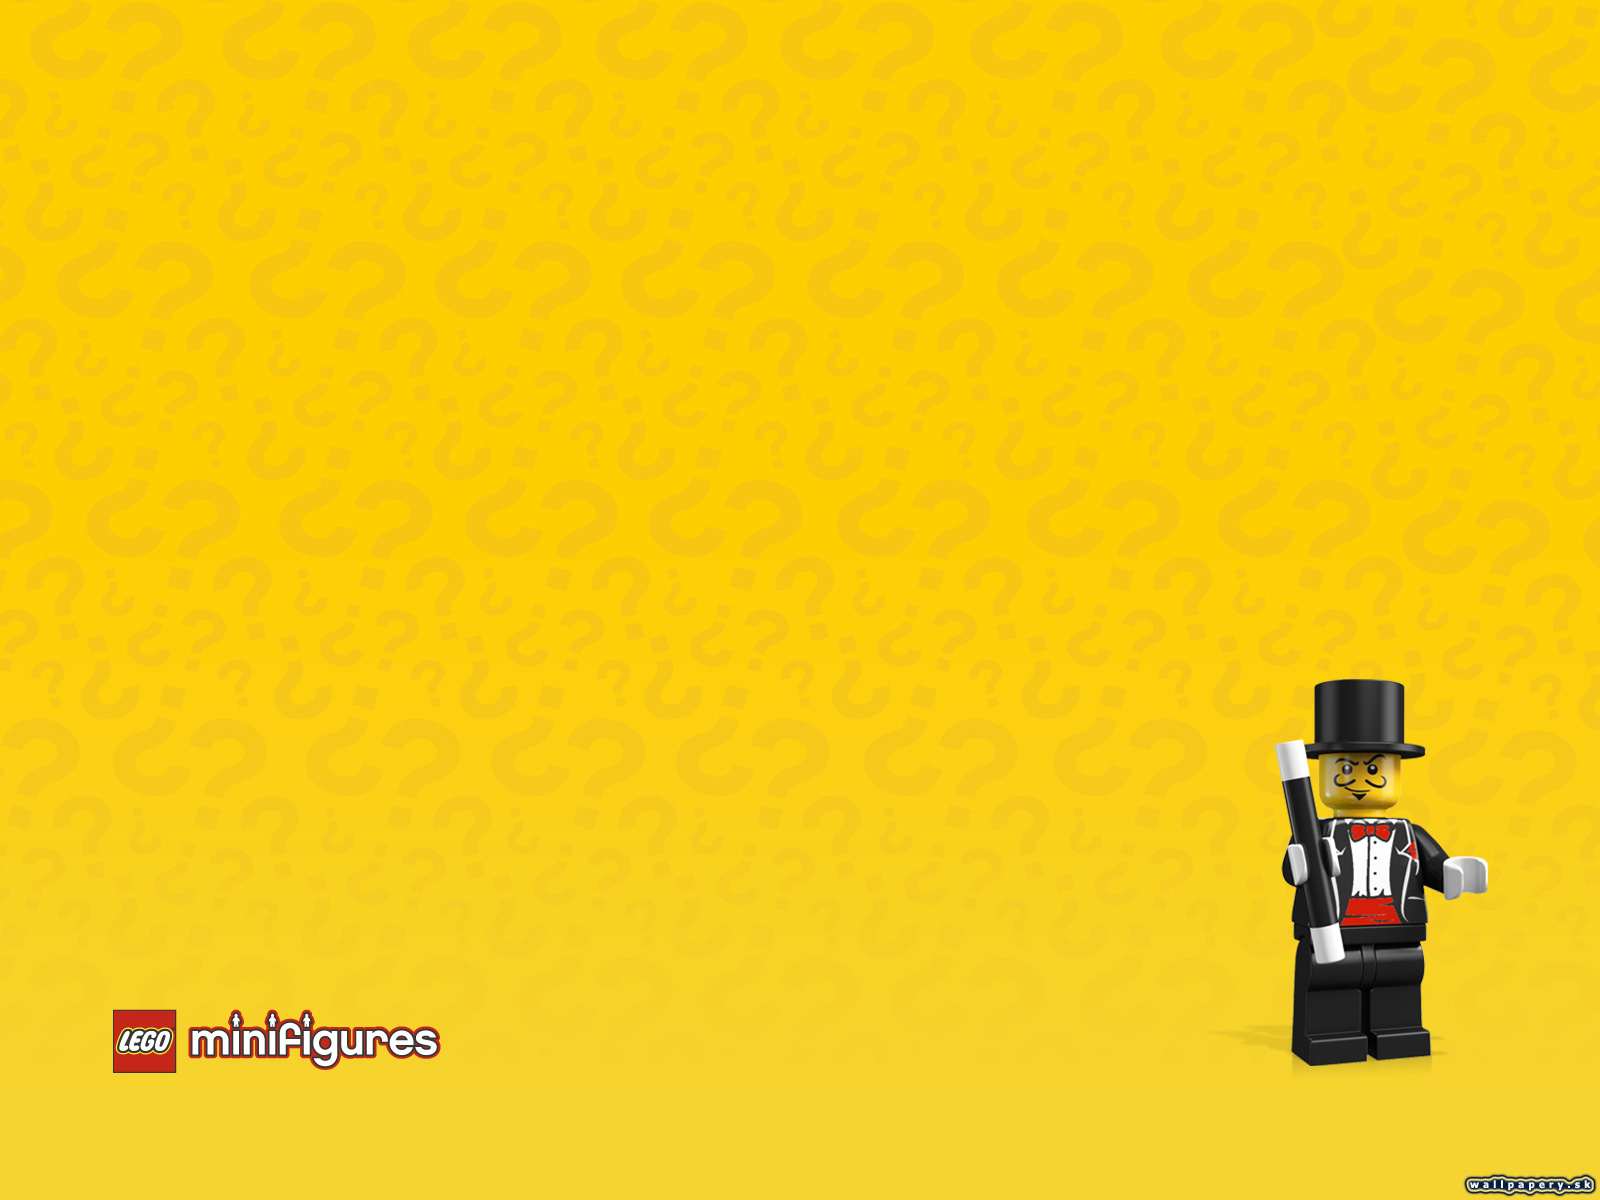 LEGO Minifigures Online - wallpaper 33